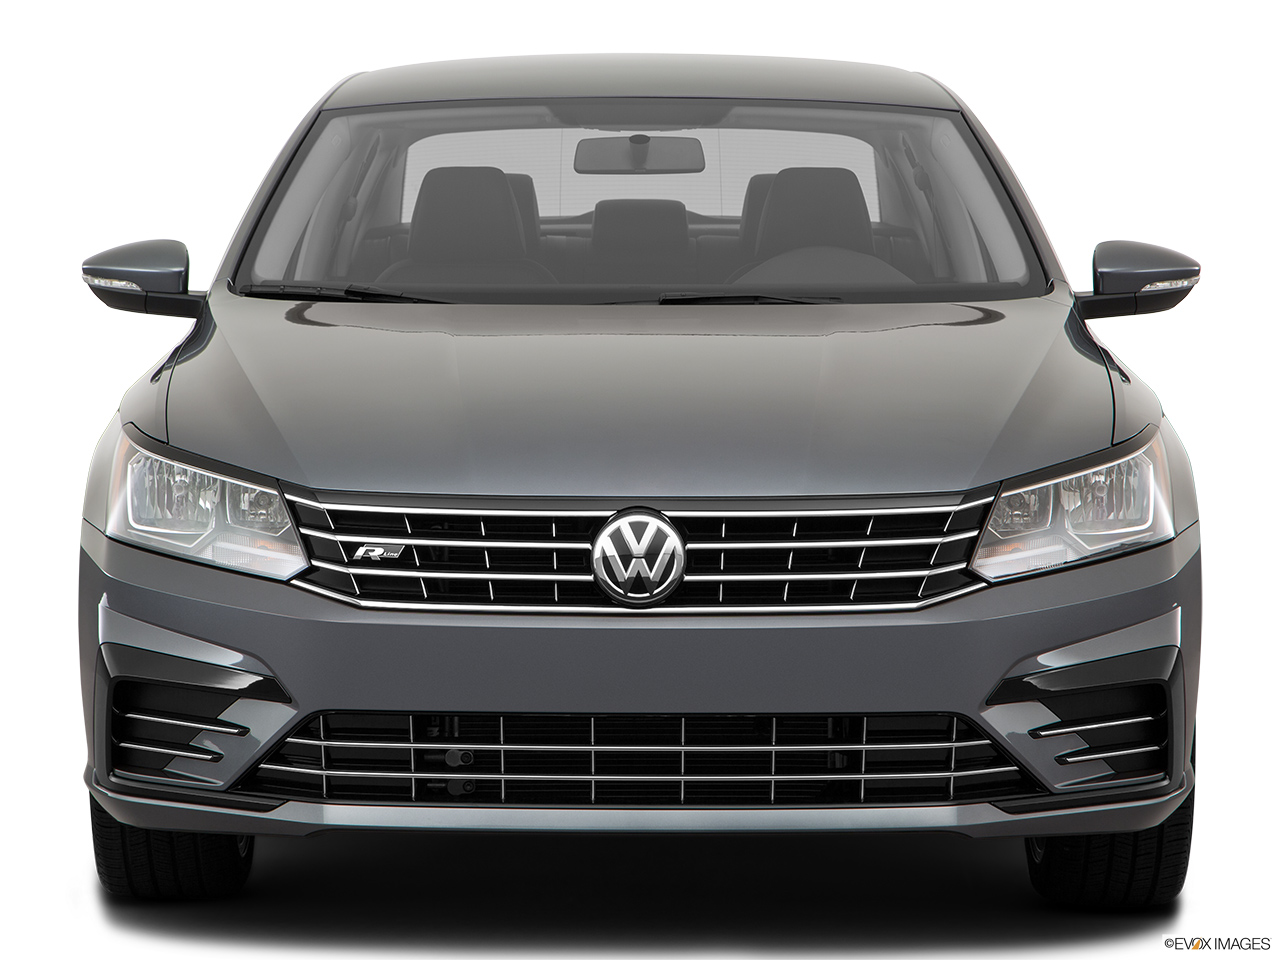 2018 Volkswagen Passat R-Line Low/wide front. 